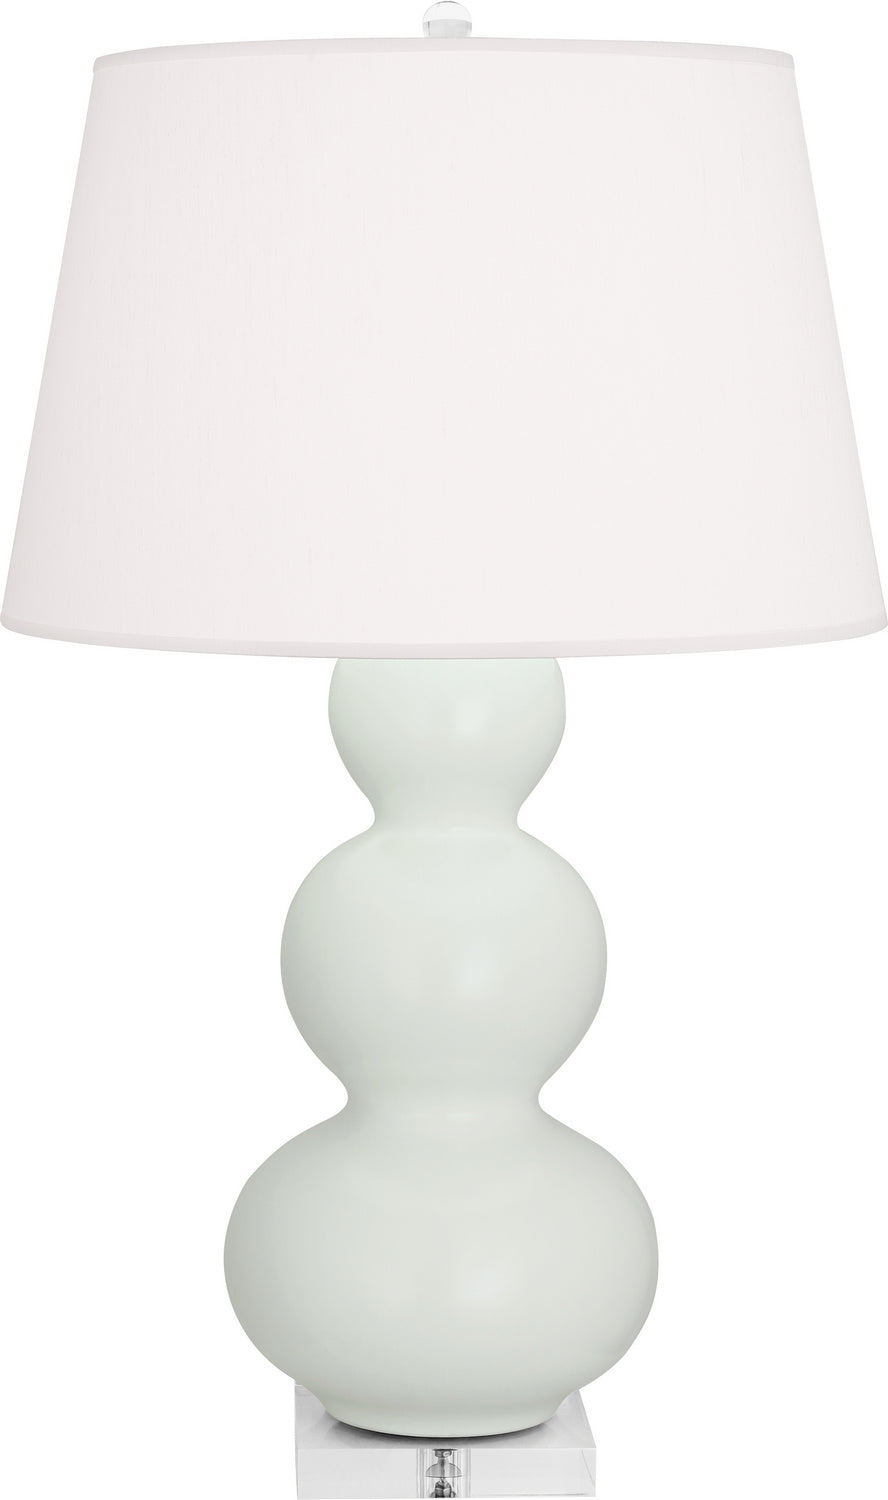 Robert Abbey - One Light Table Lamp - Triple Gourd - Matte Celadon Glazed Ceramic w/Lucite Base- Union Lighting Luminaires Decor